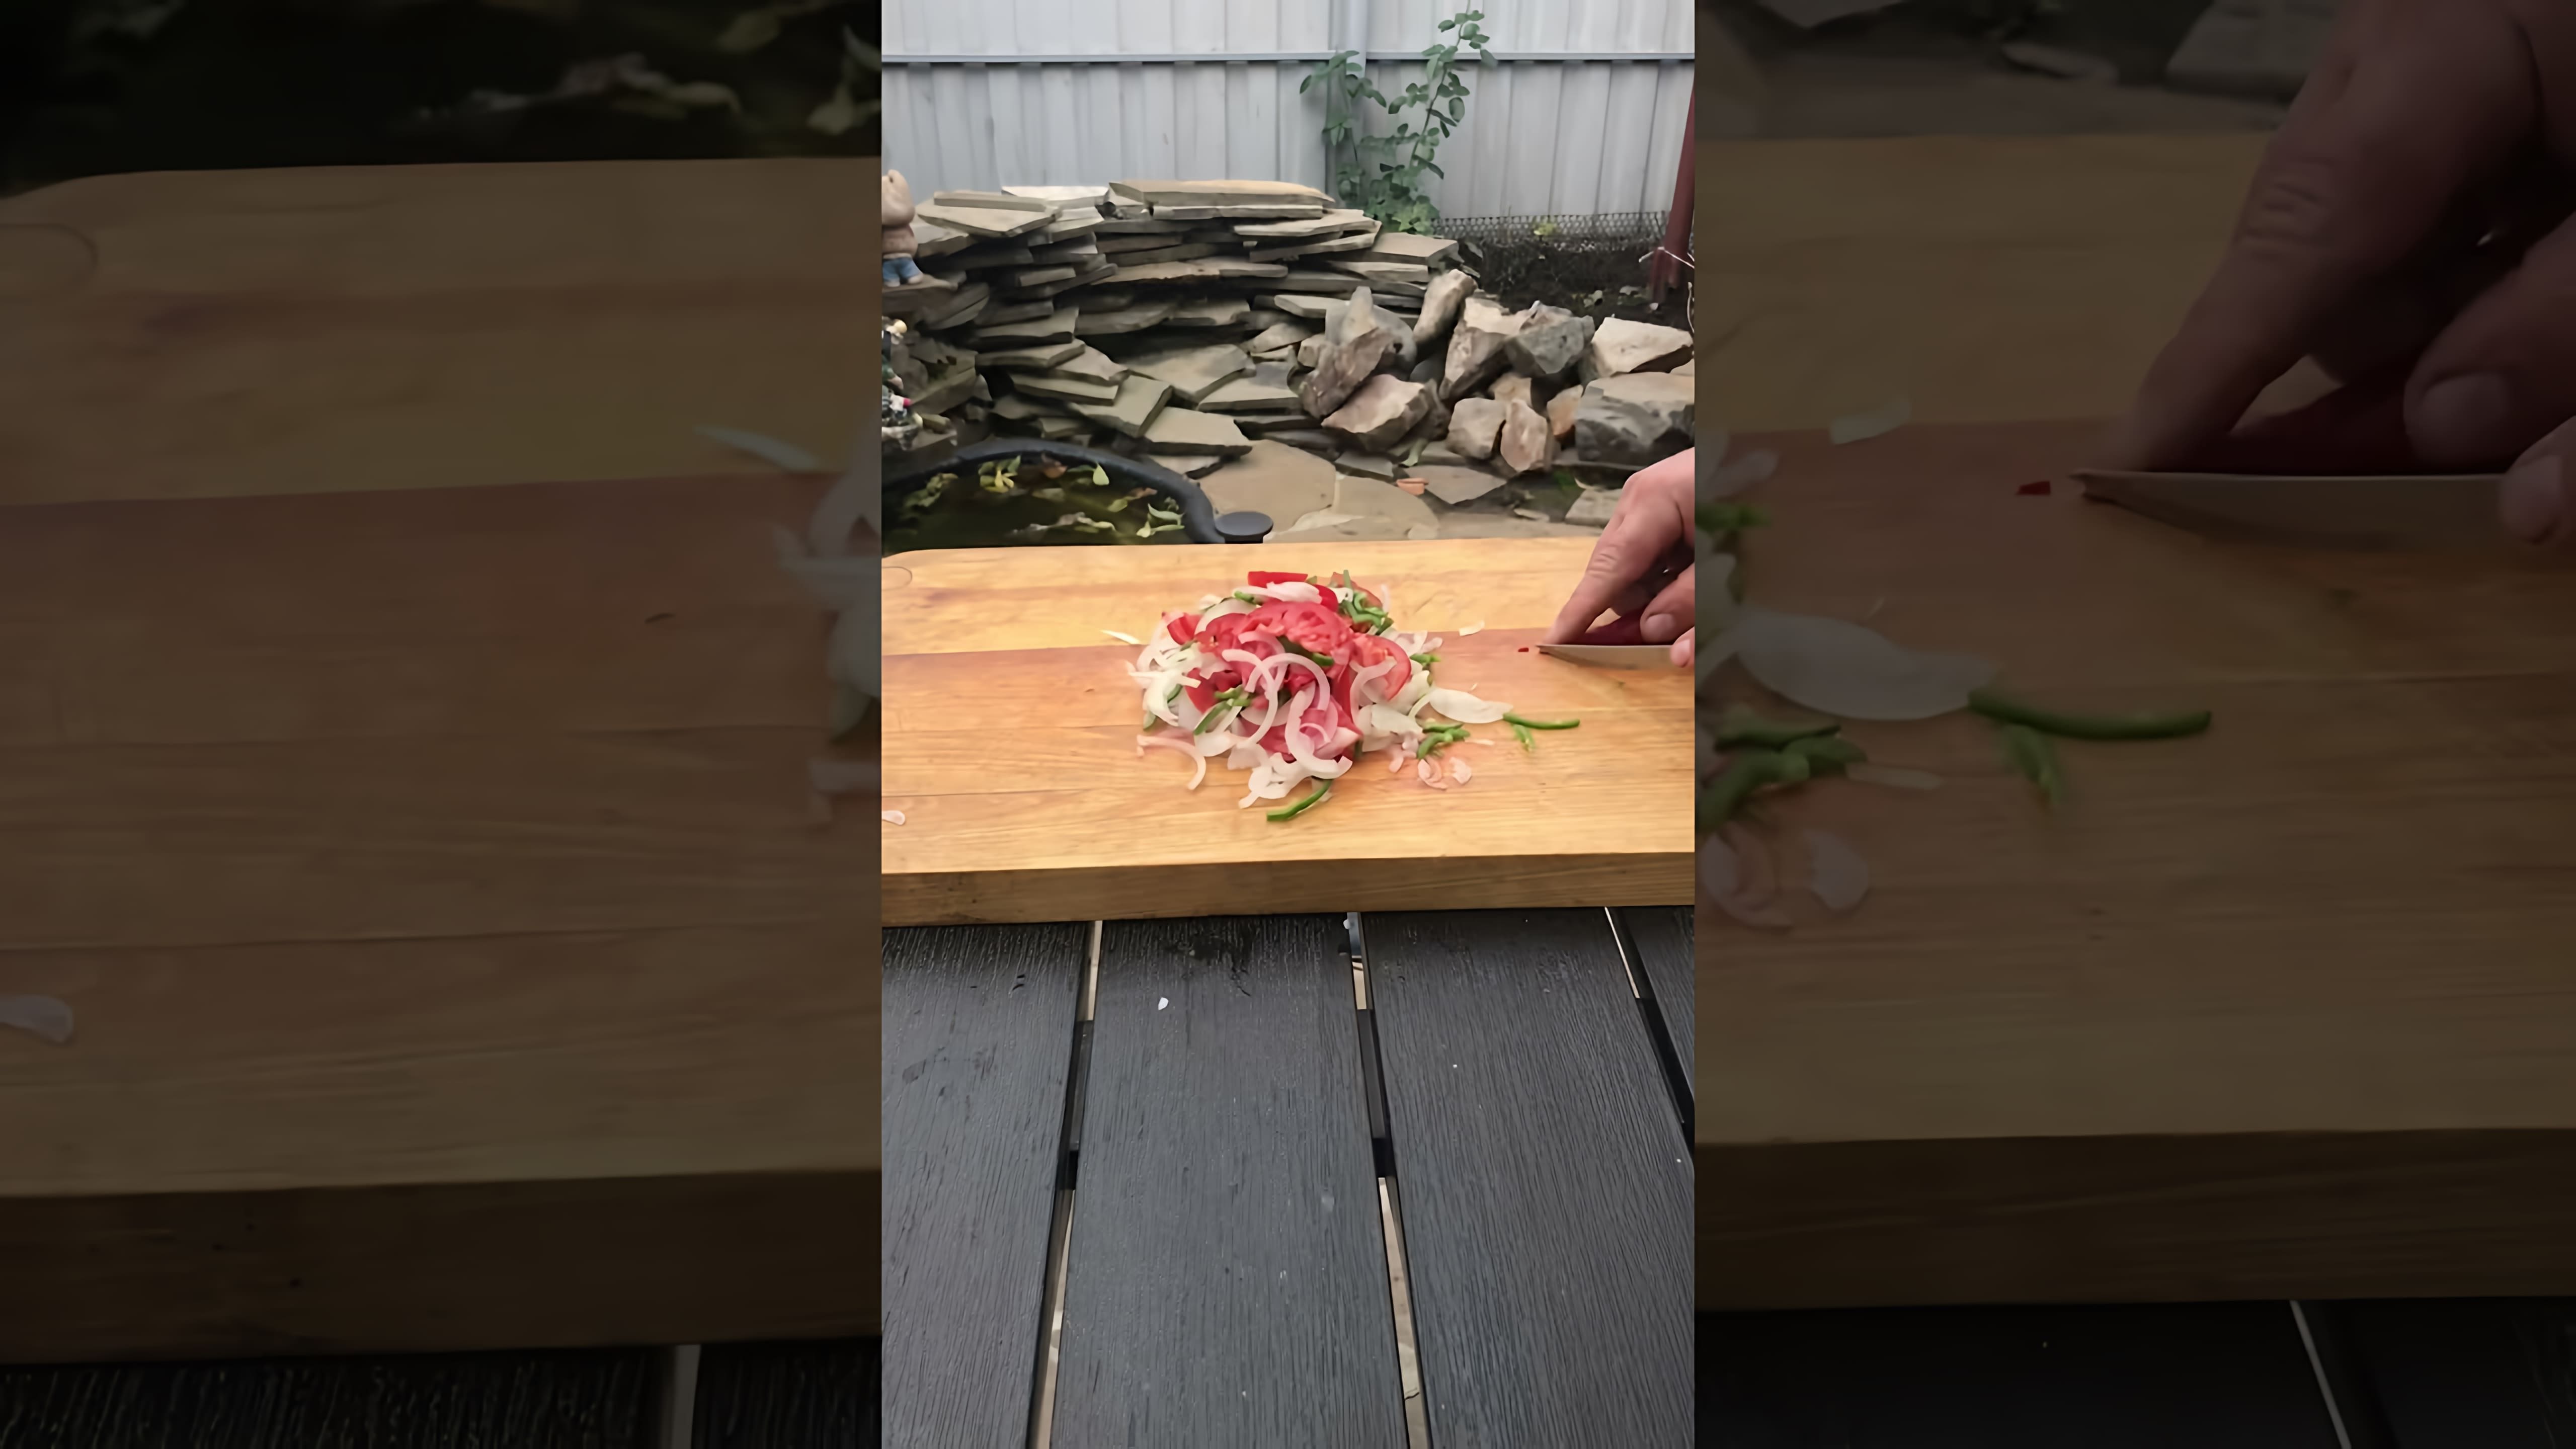 В этом видео демонстрируется быстрый и простой способ приготовления салата "Ачичук", который подается вместе с пловом